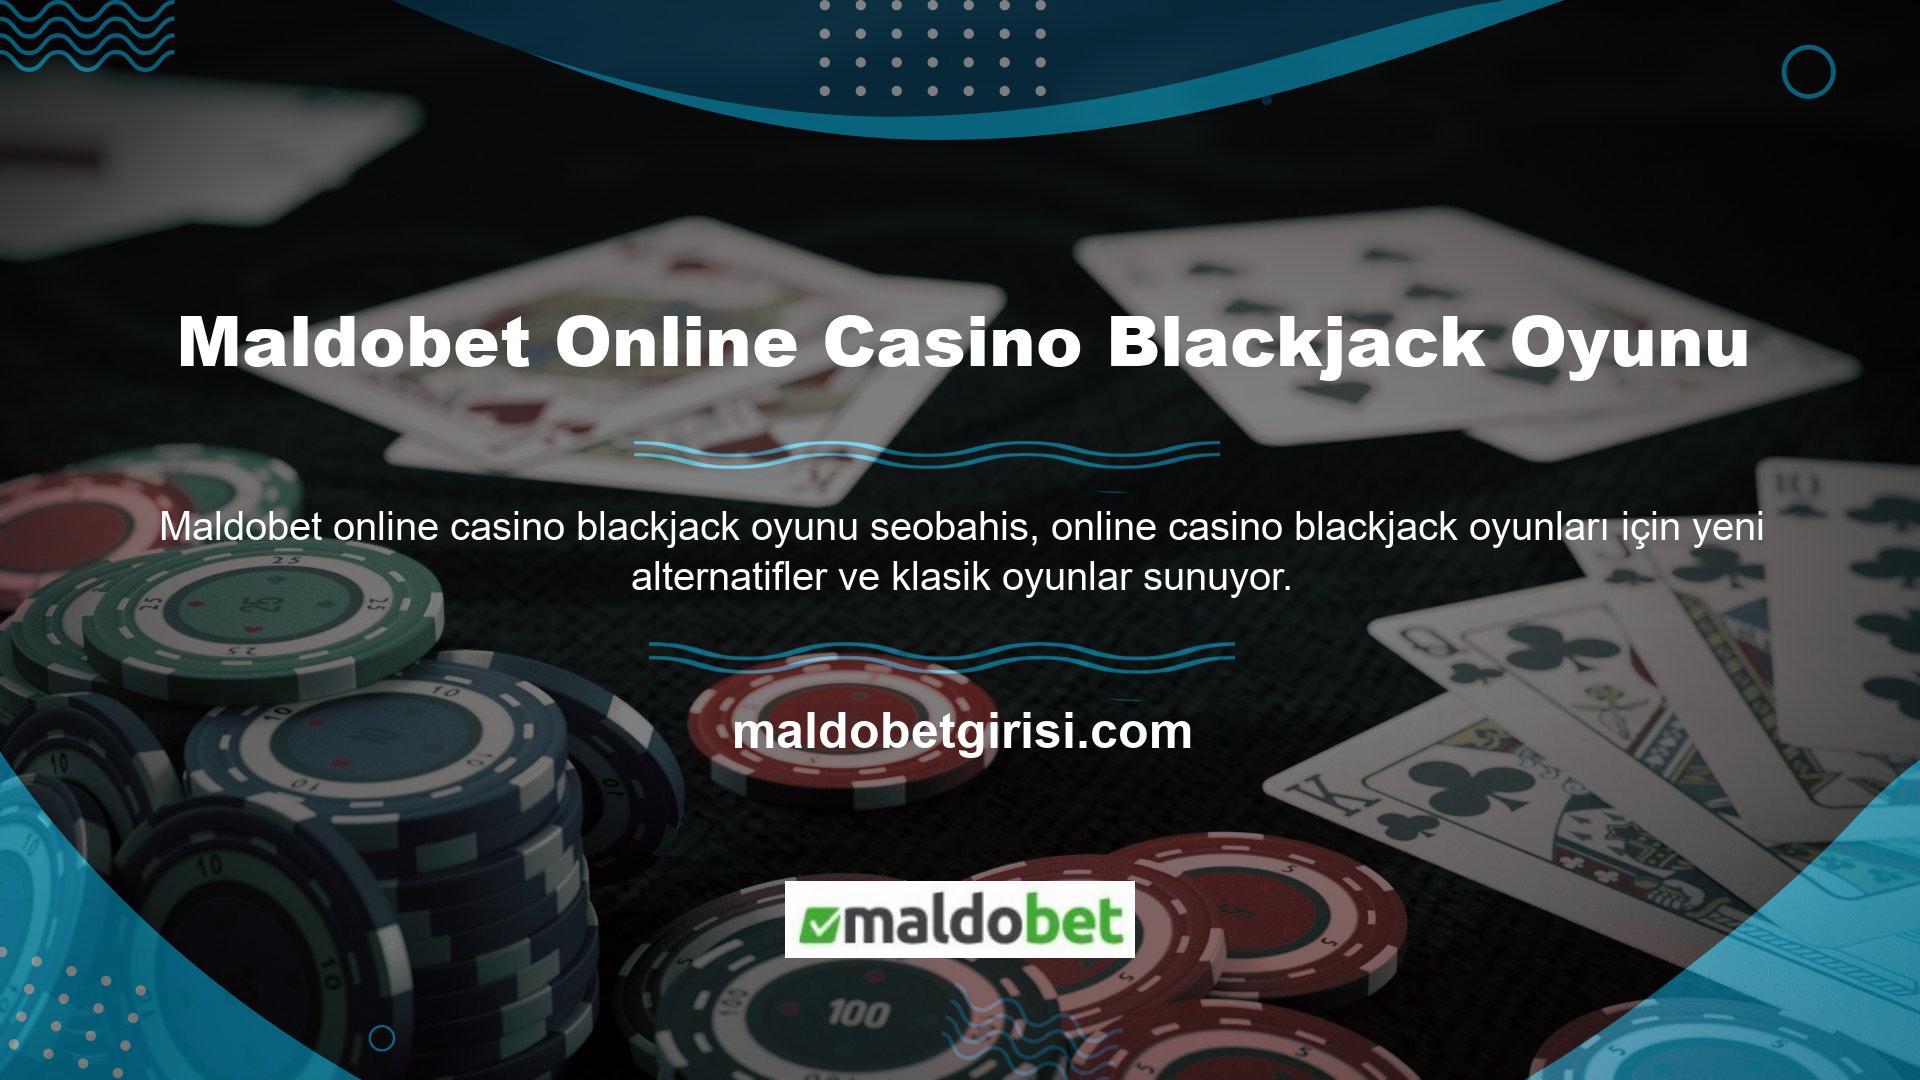 Blackjack oyun seçenekleri, web siteleri canlı casino hizmetleri sunan altı farklı stüdyo tarafından geliştirilmiştir